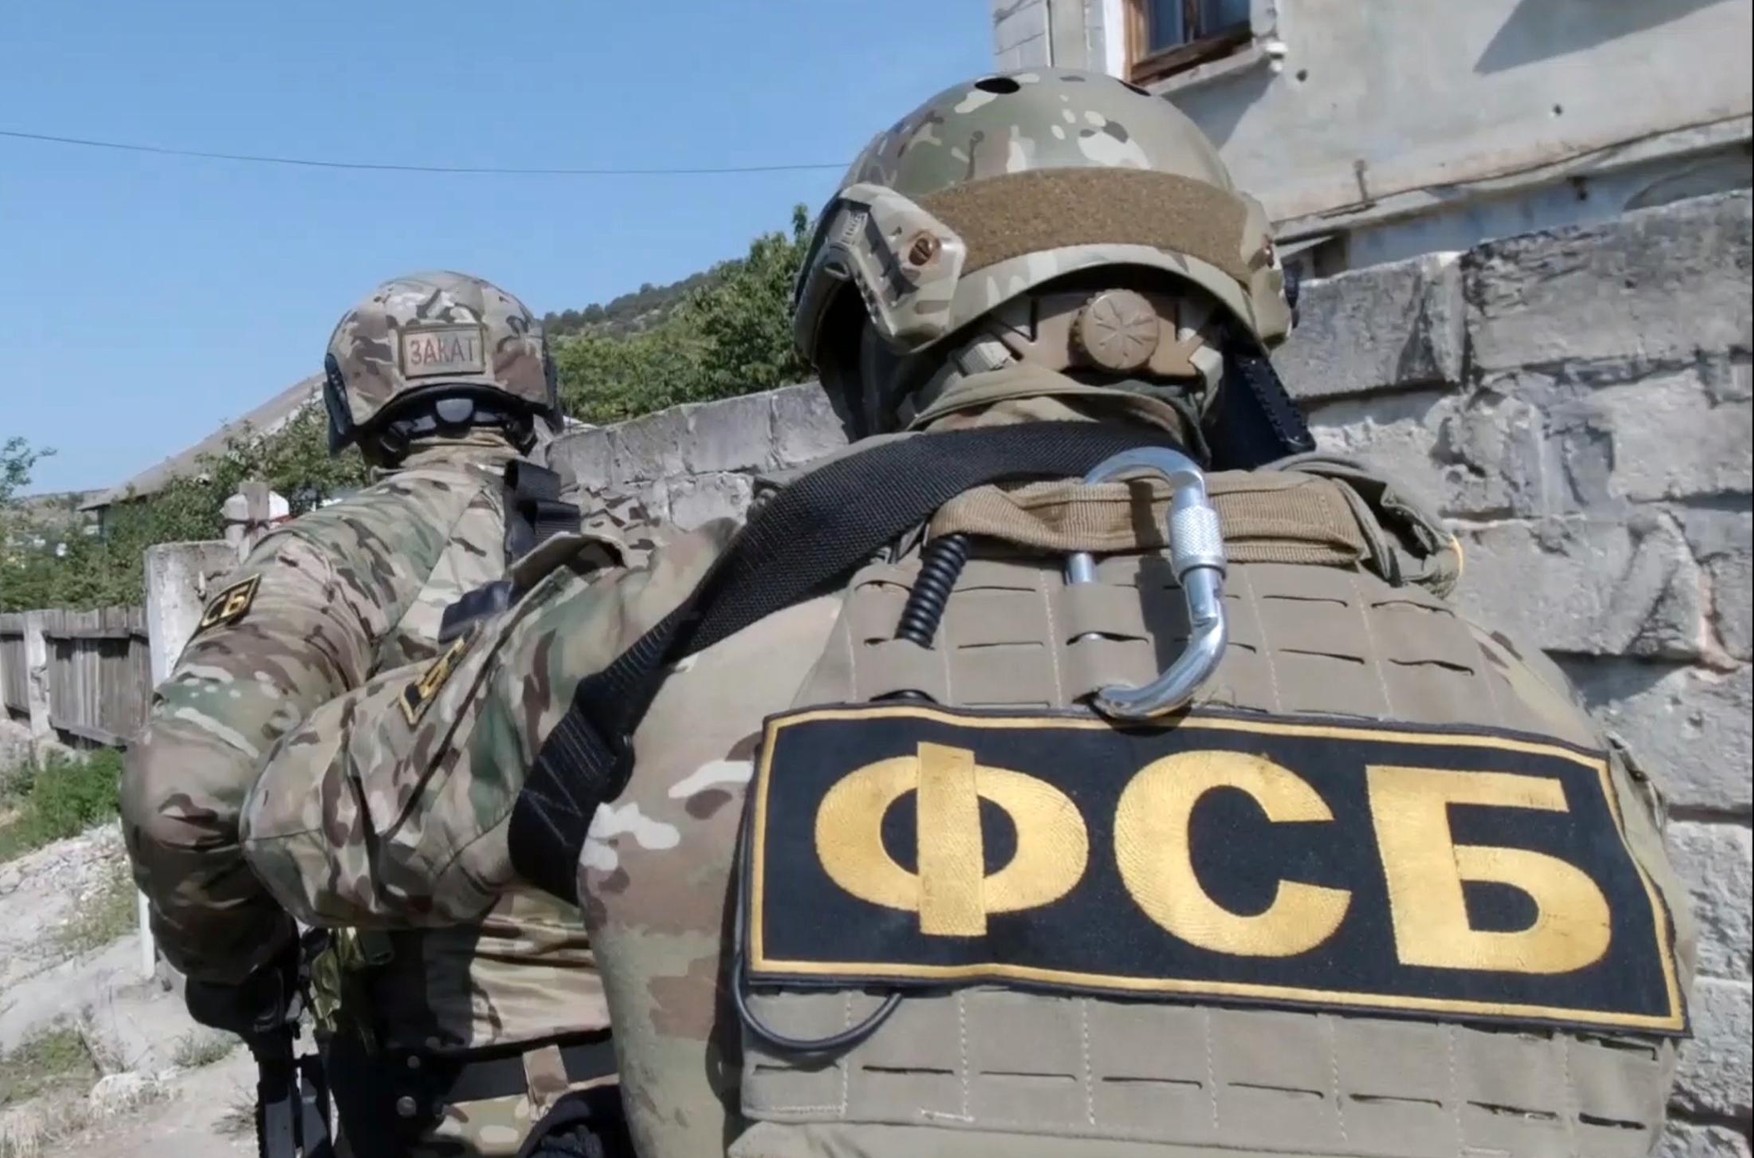 ФСБ задержала сотрудника оборонного завода за госизмену. Он отправлял фото секретных документов в Украину — ТАСС